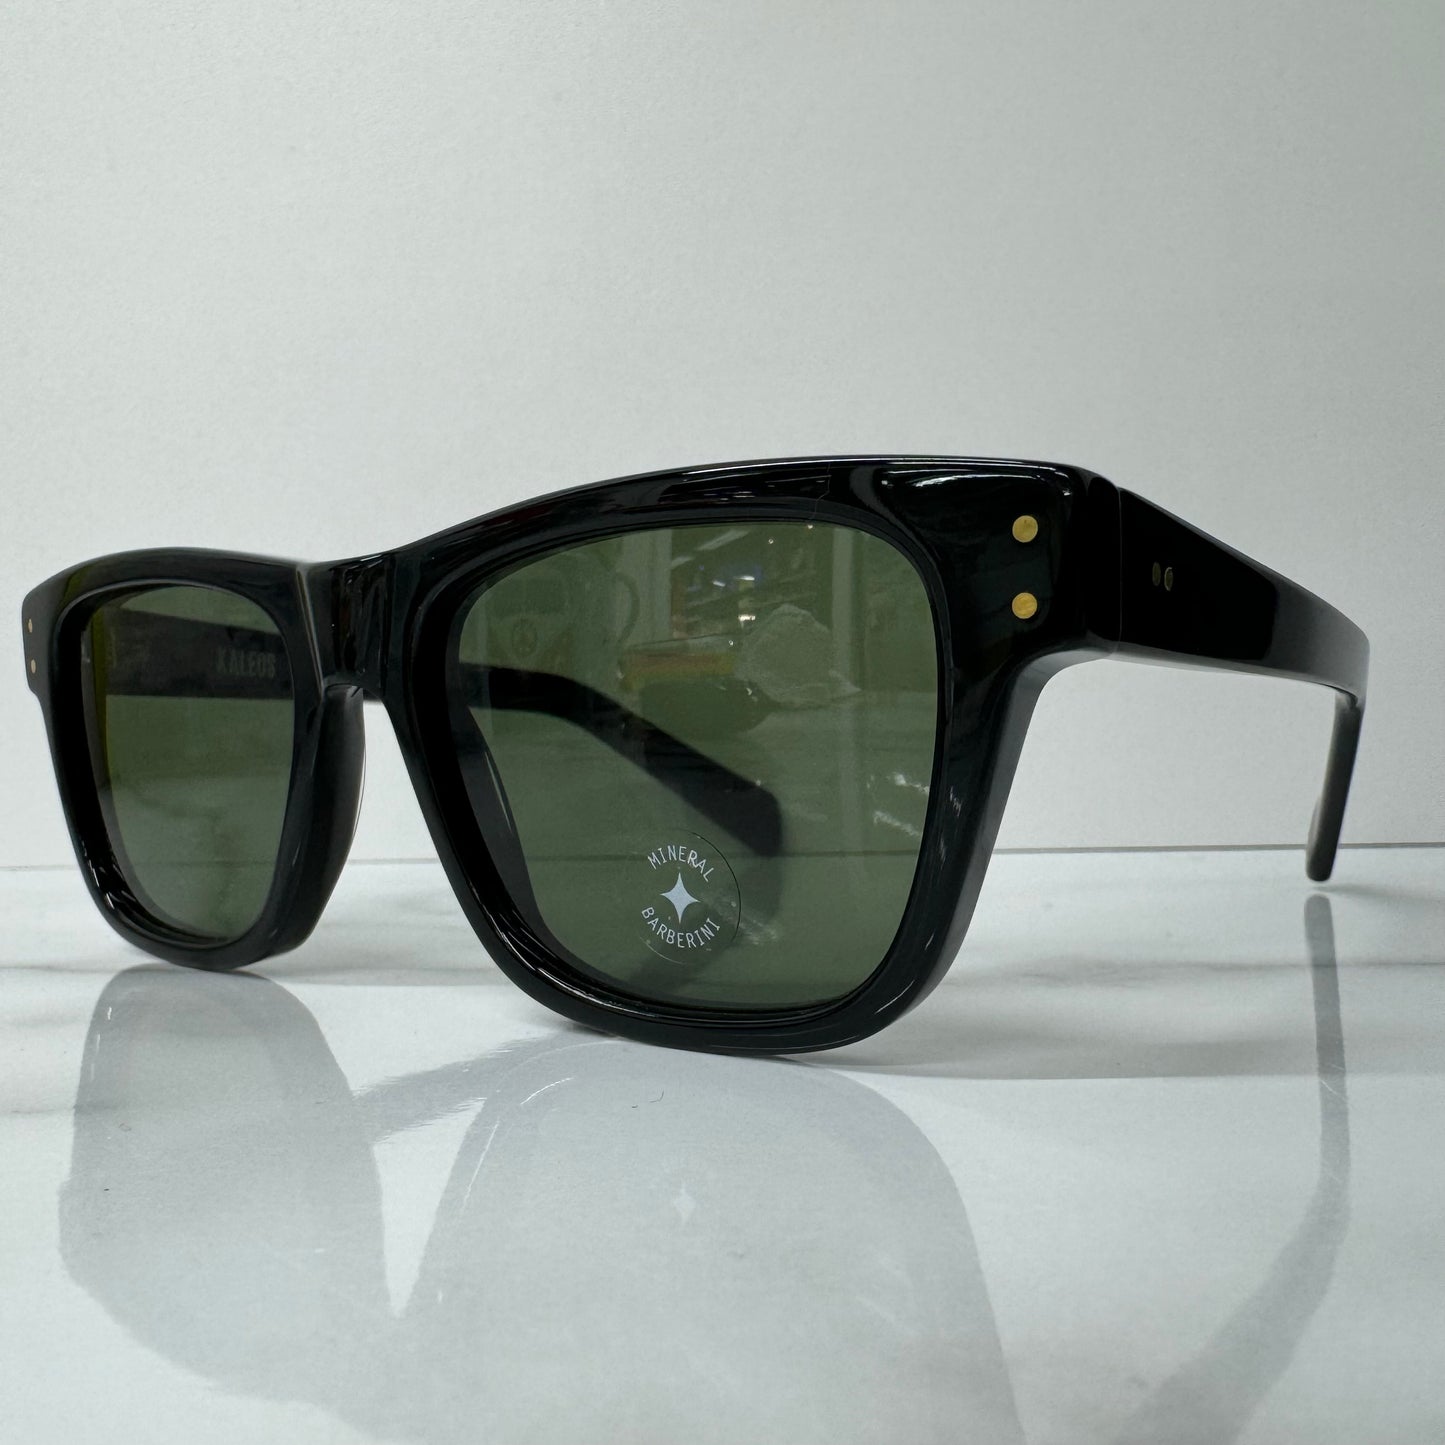 Kaleos Gentry Sunglasses C001 Unisex Square Black & Green Tinted Acetate Glasses